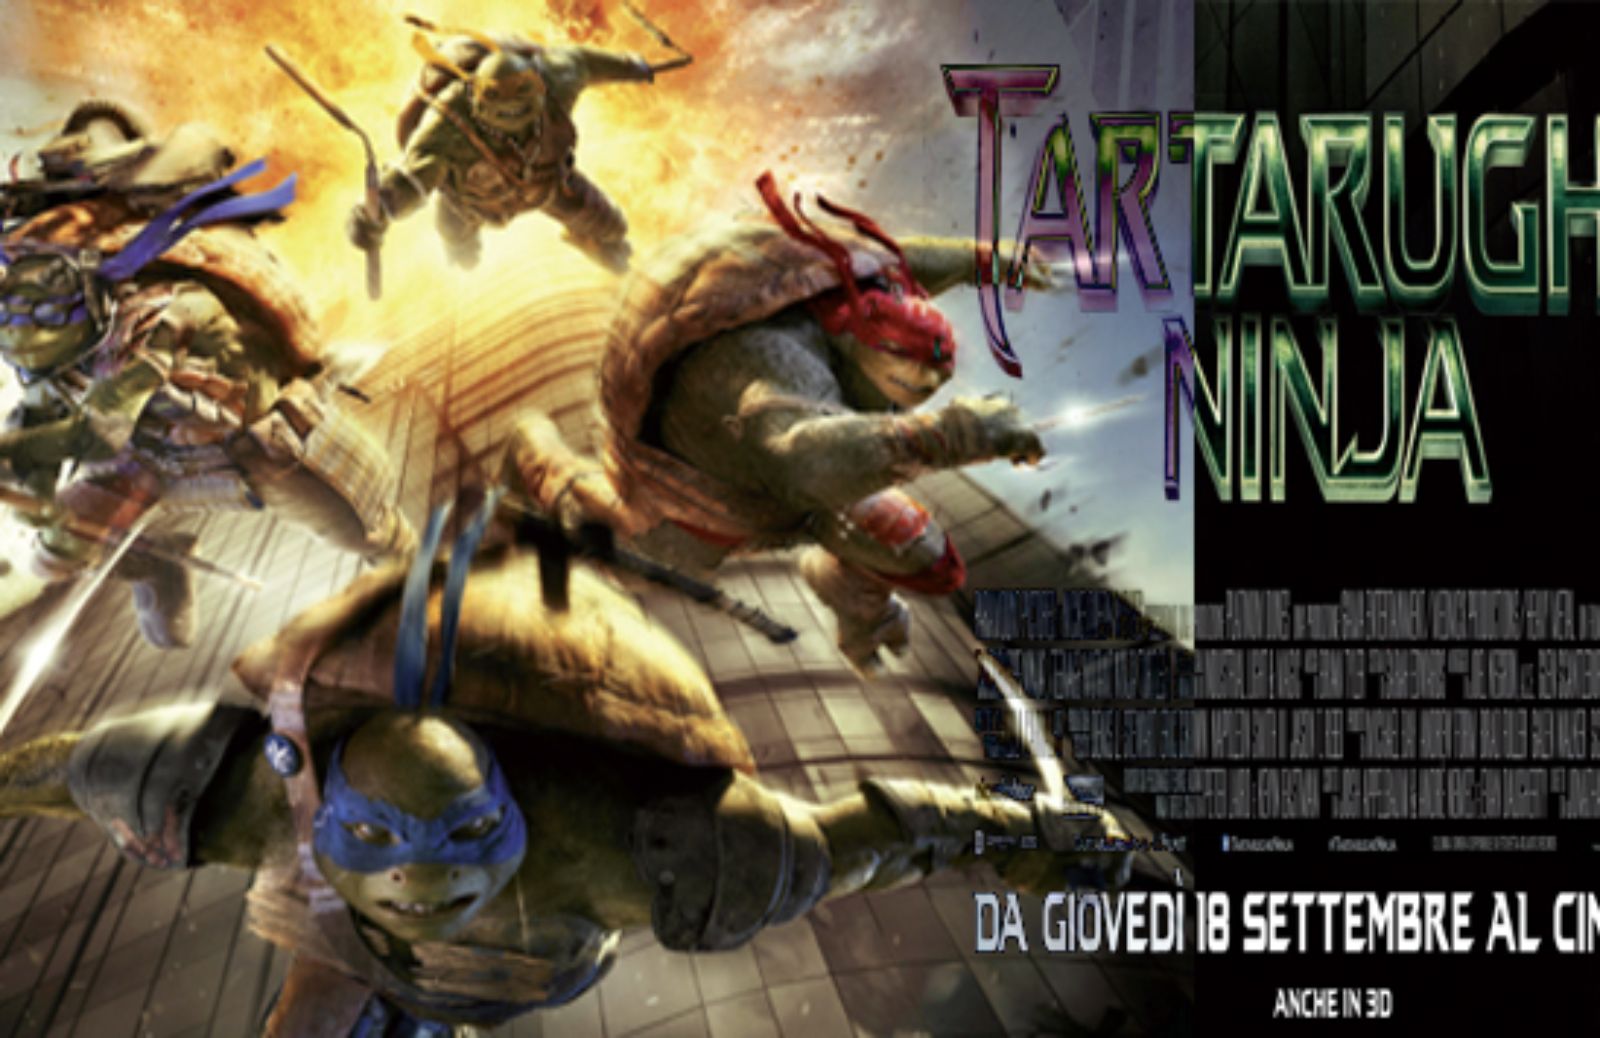 Le tartarughe Ninja, il ritorno al cinema